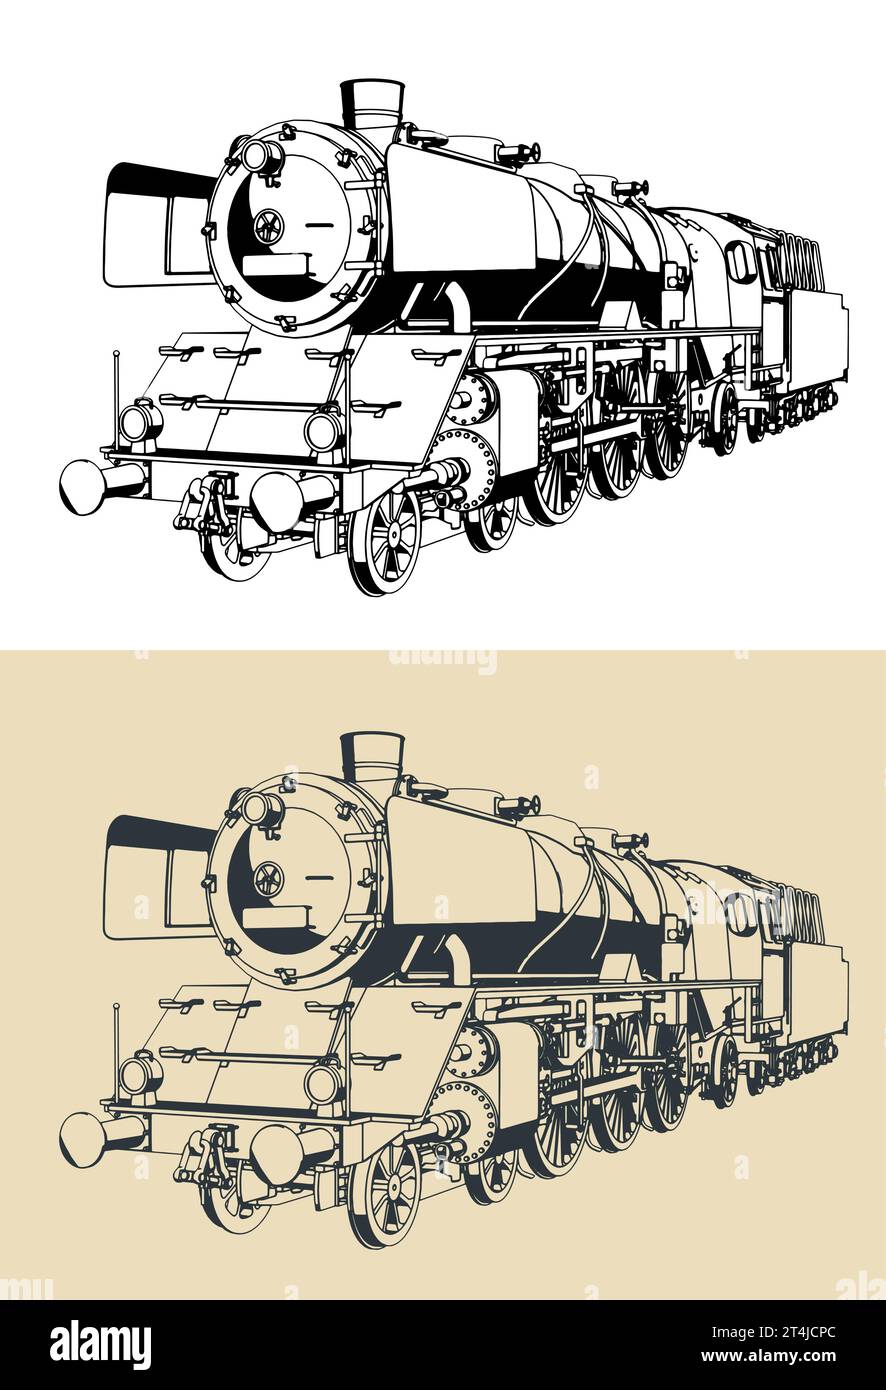 Illustration vectorielle stylisée de dessins de locomotive à vapeur Illustration de Vecteur